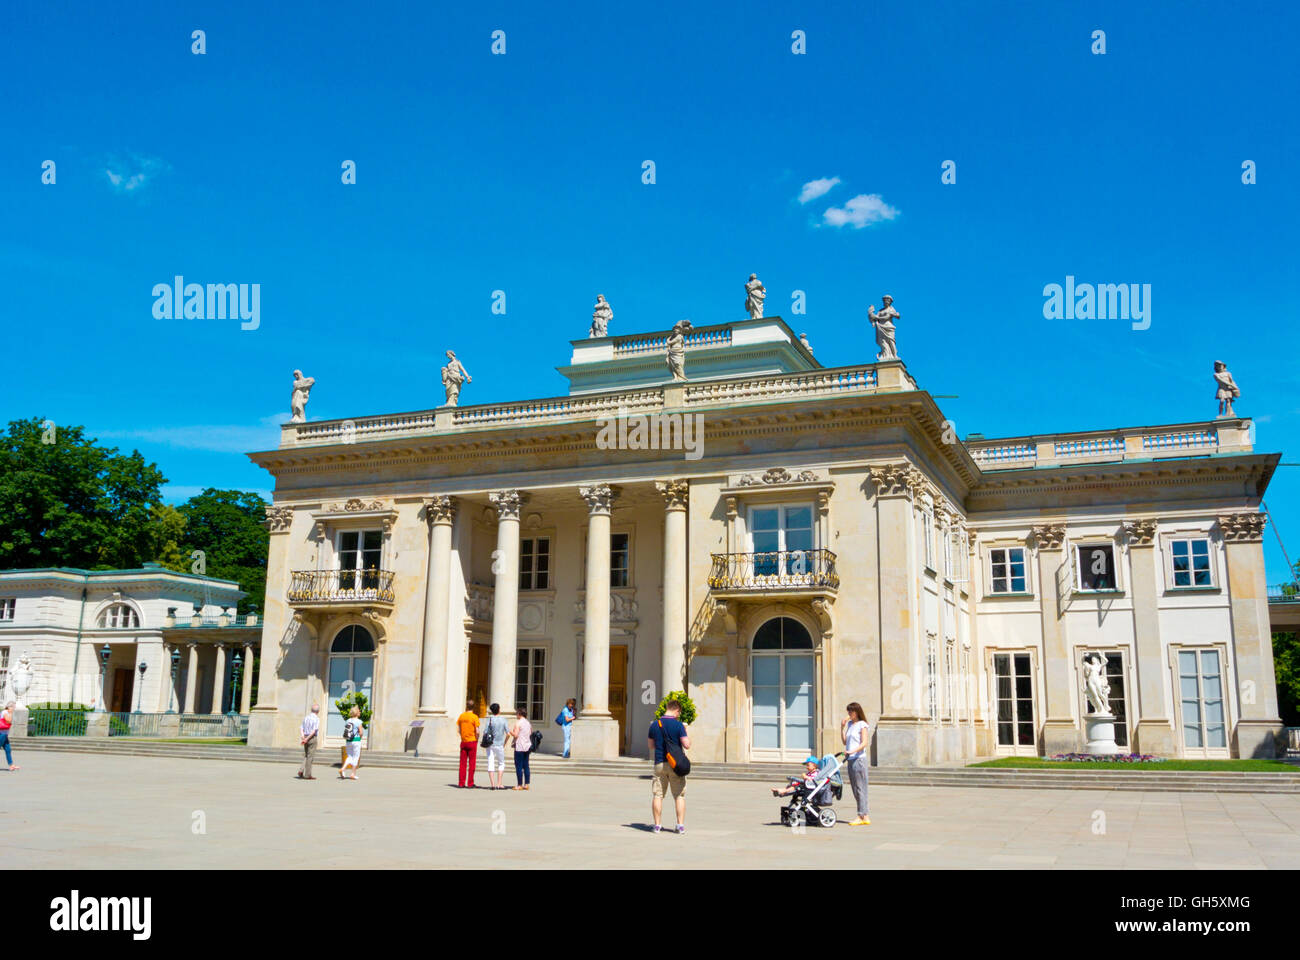 Palac Na Wyspie, Palace on the water or Palace on the isle, Lazienki Krolewskie, Lazienki Park, Warsaw, Poland Stock Photo